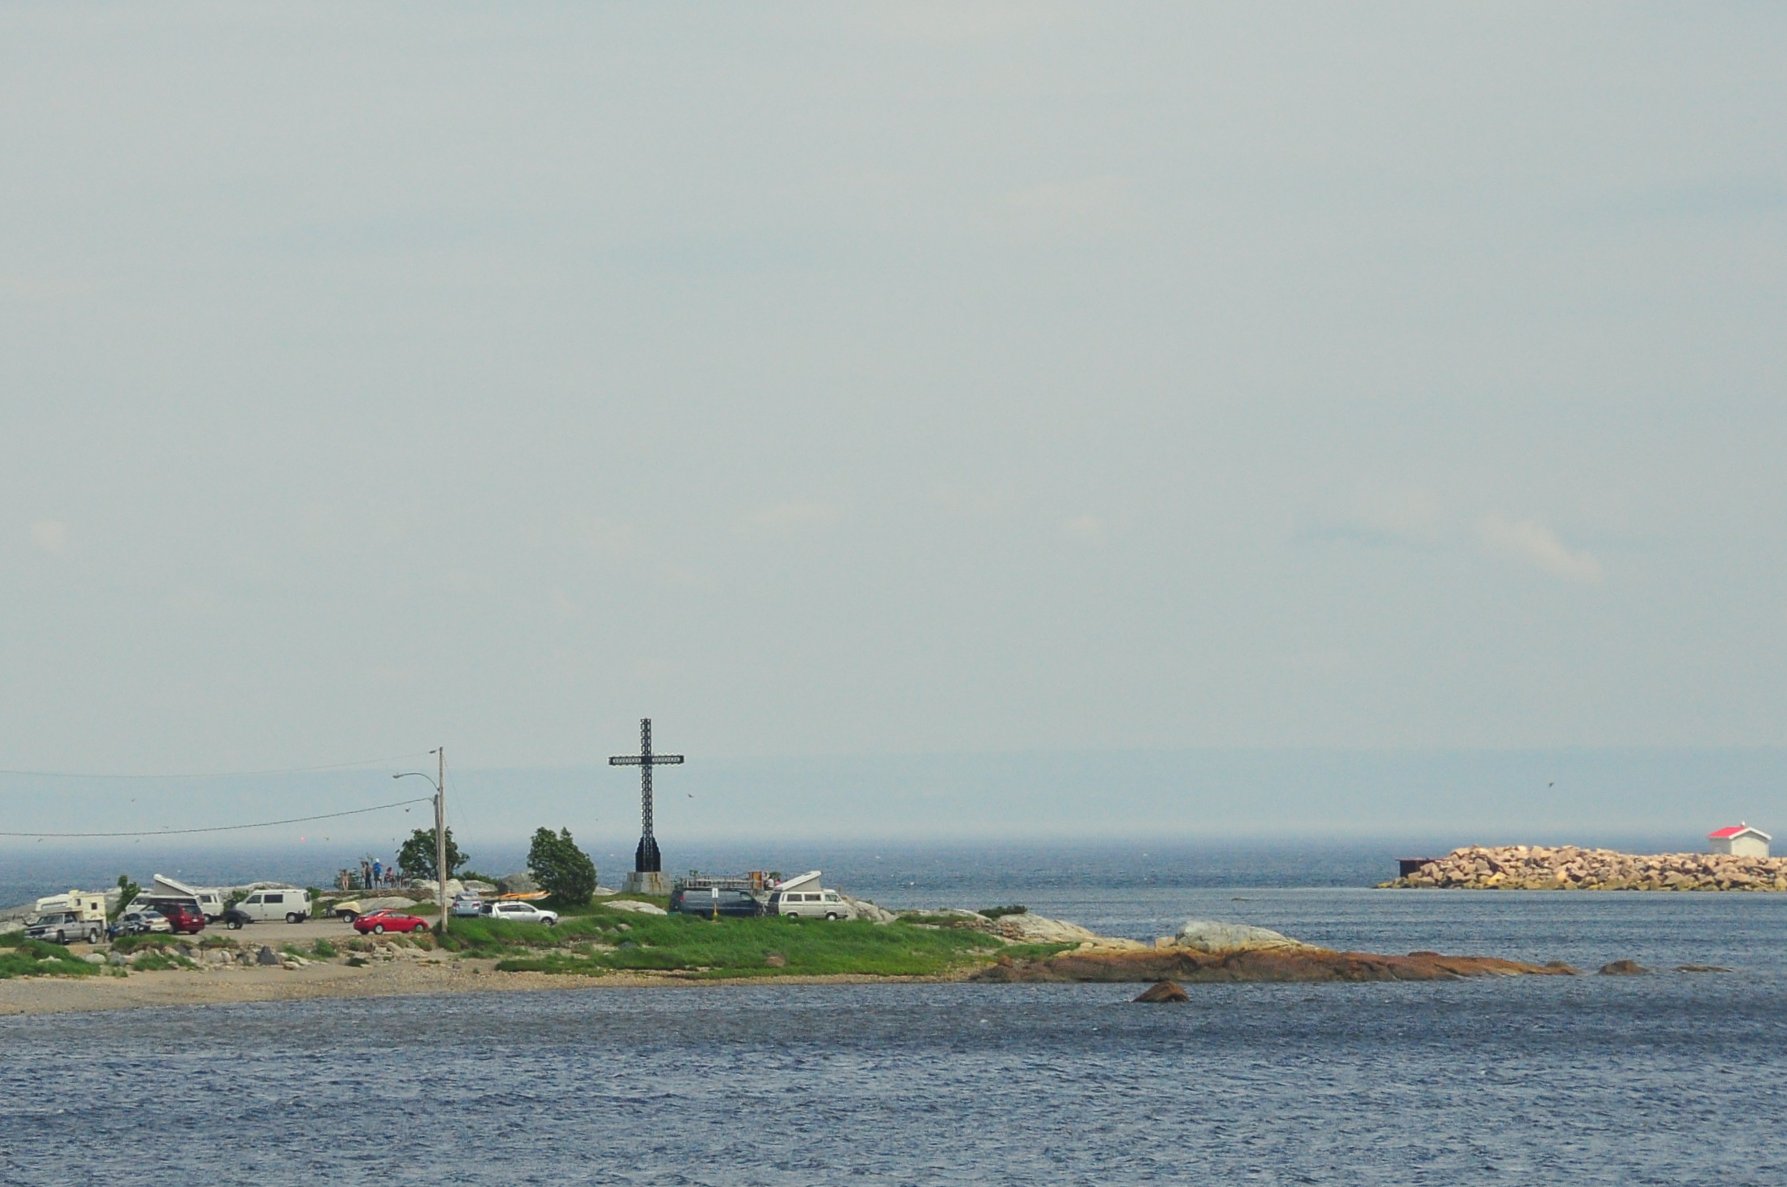 a light house on an island near the ocean